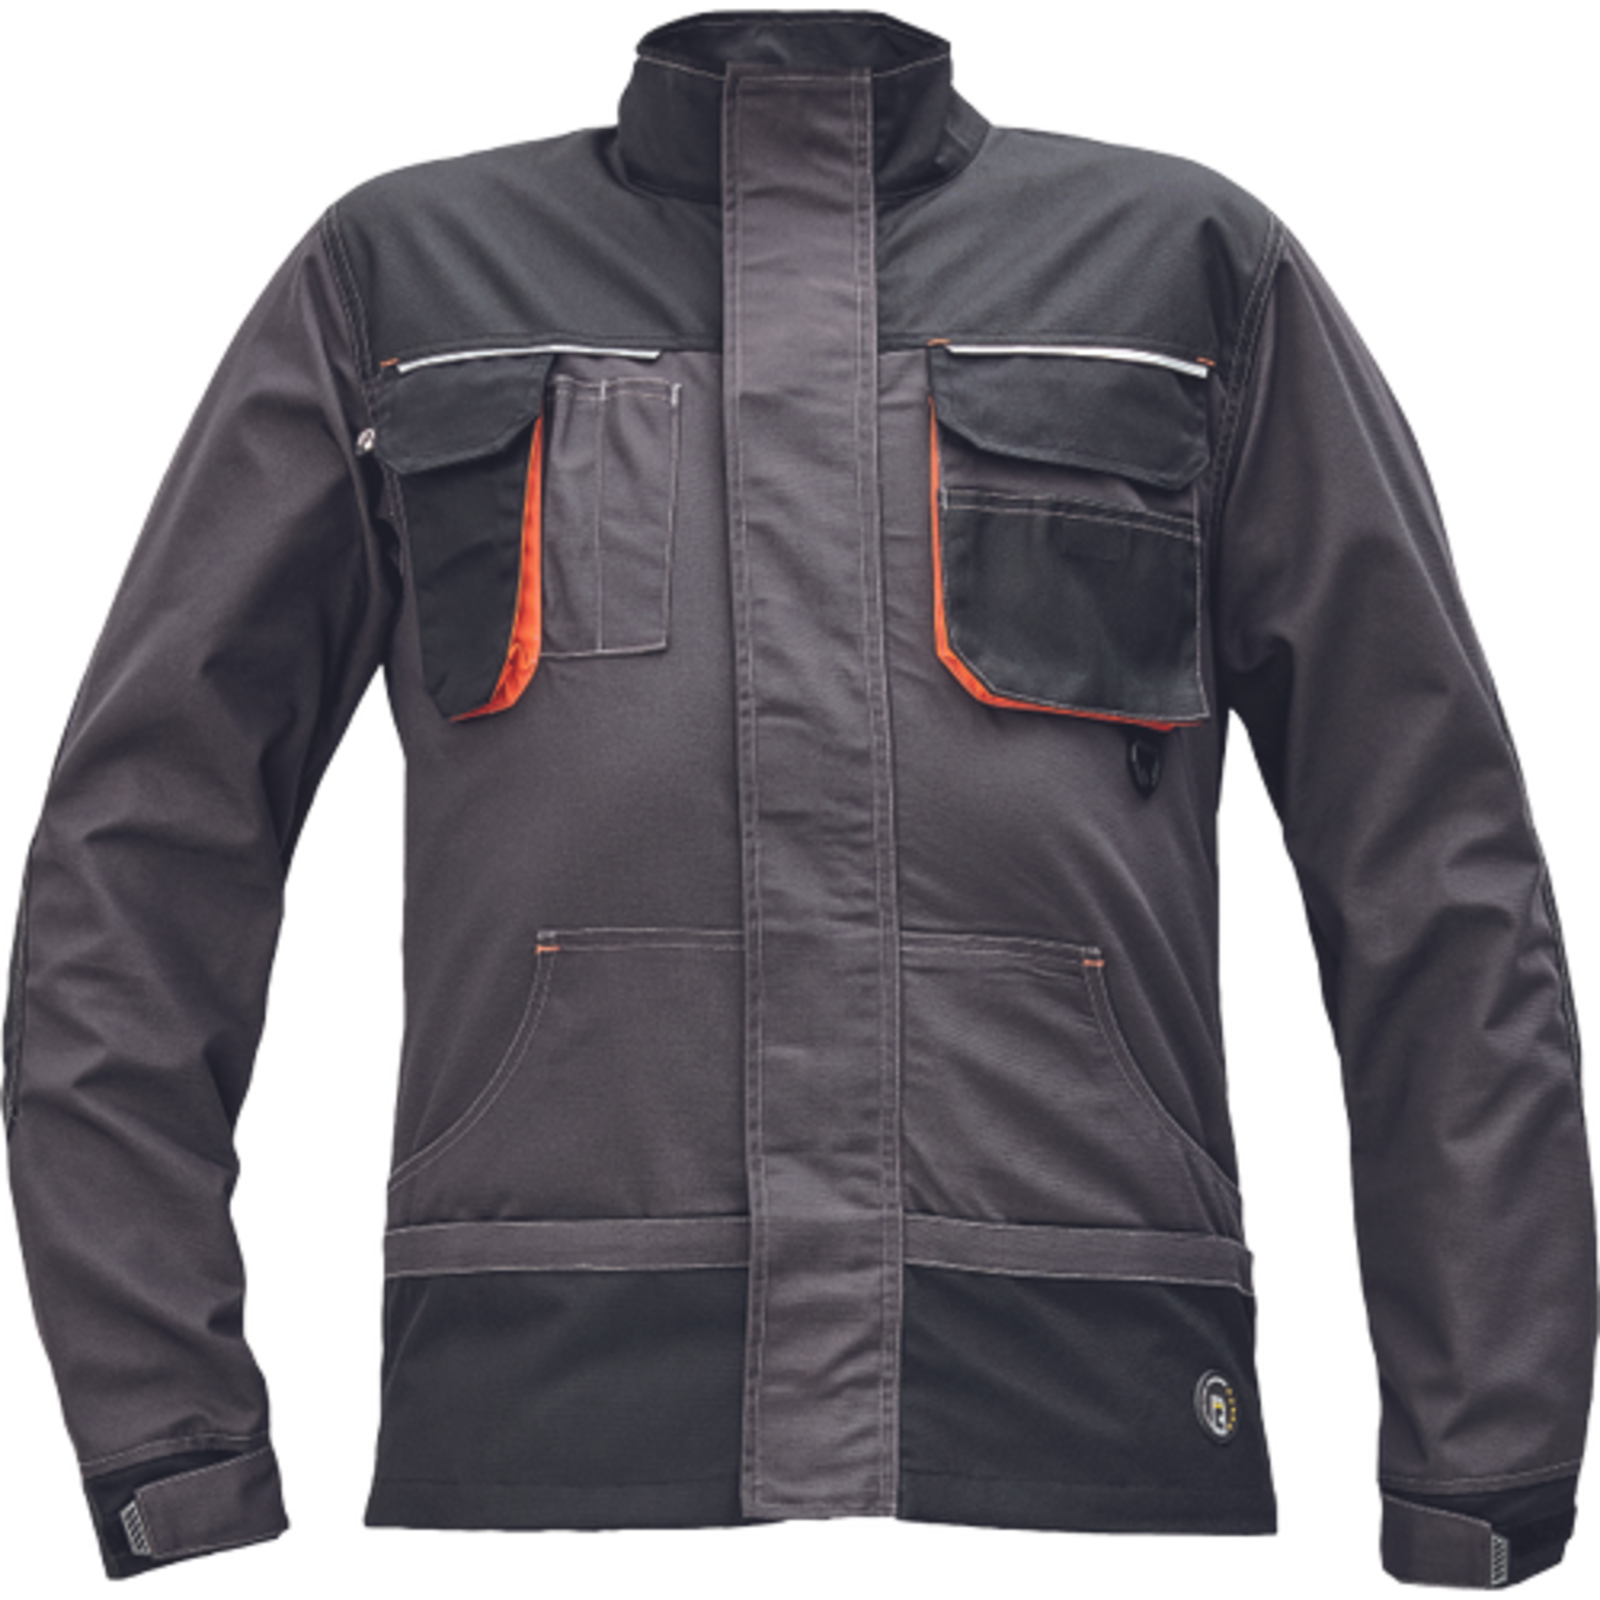 Odolná montérková bunda Emerton Plus - veľkosť: 58, farba: antracit/oranžová